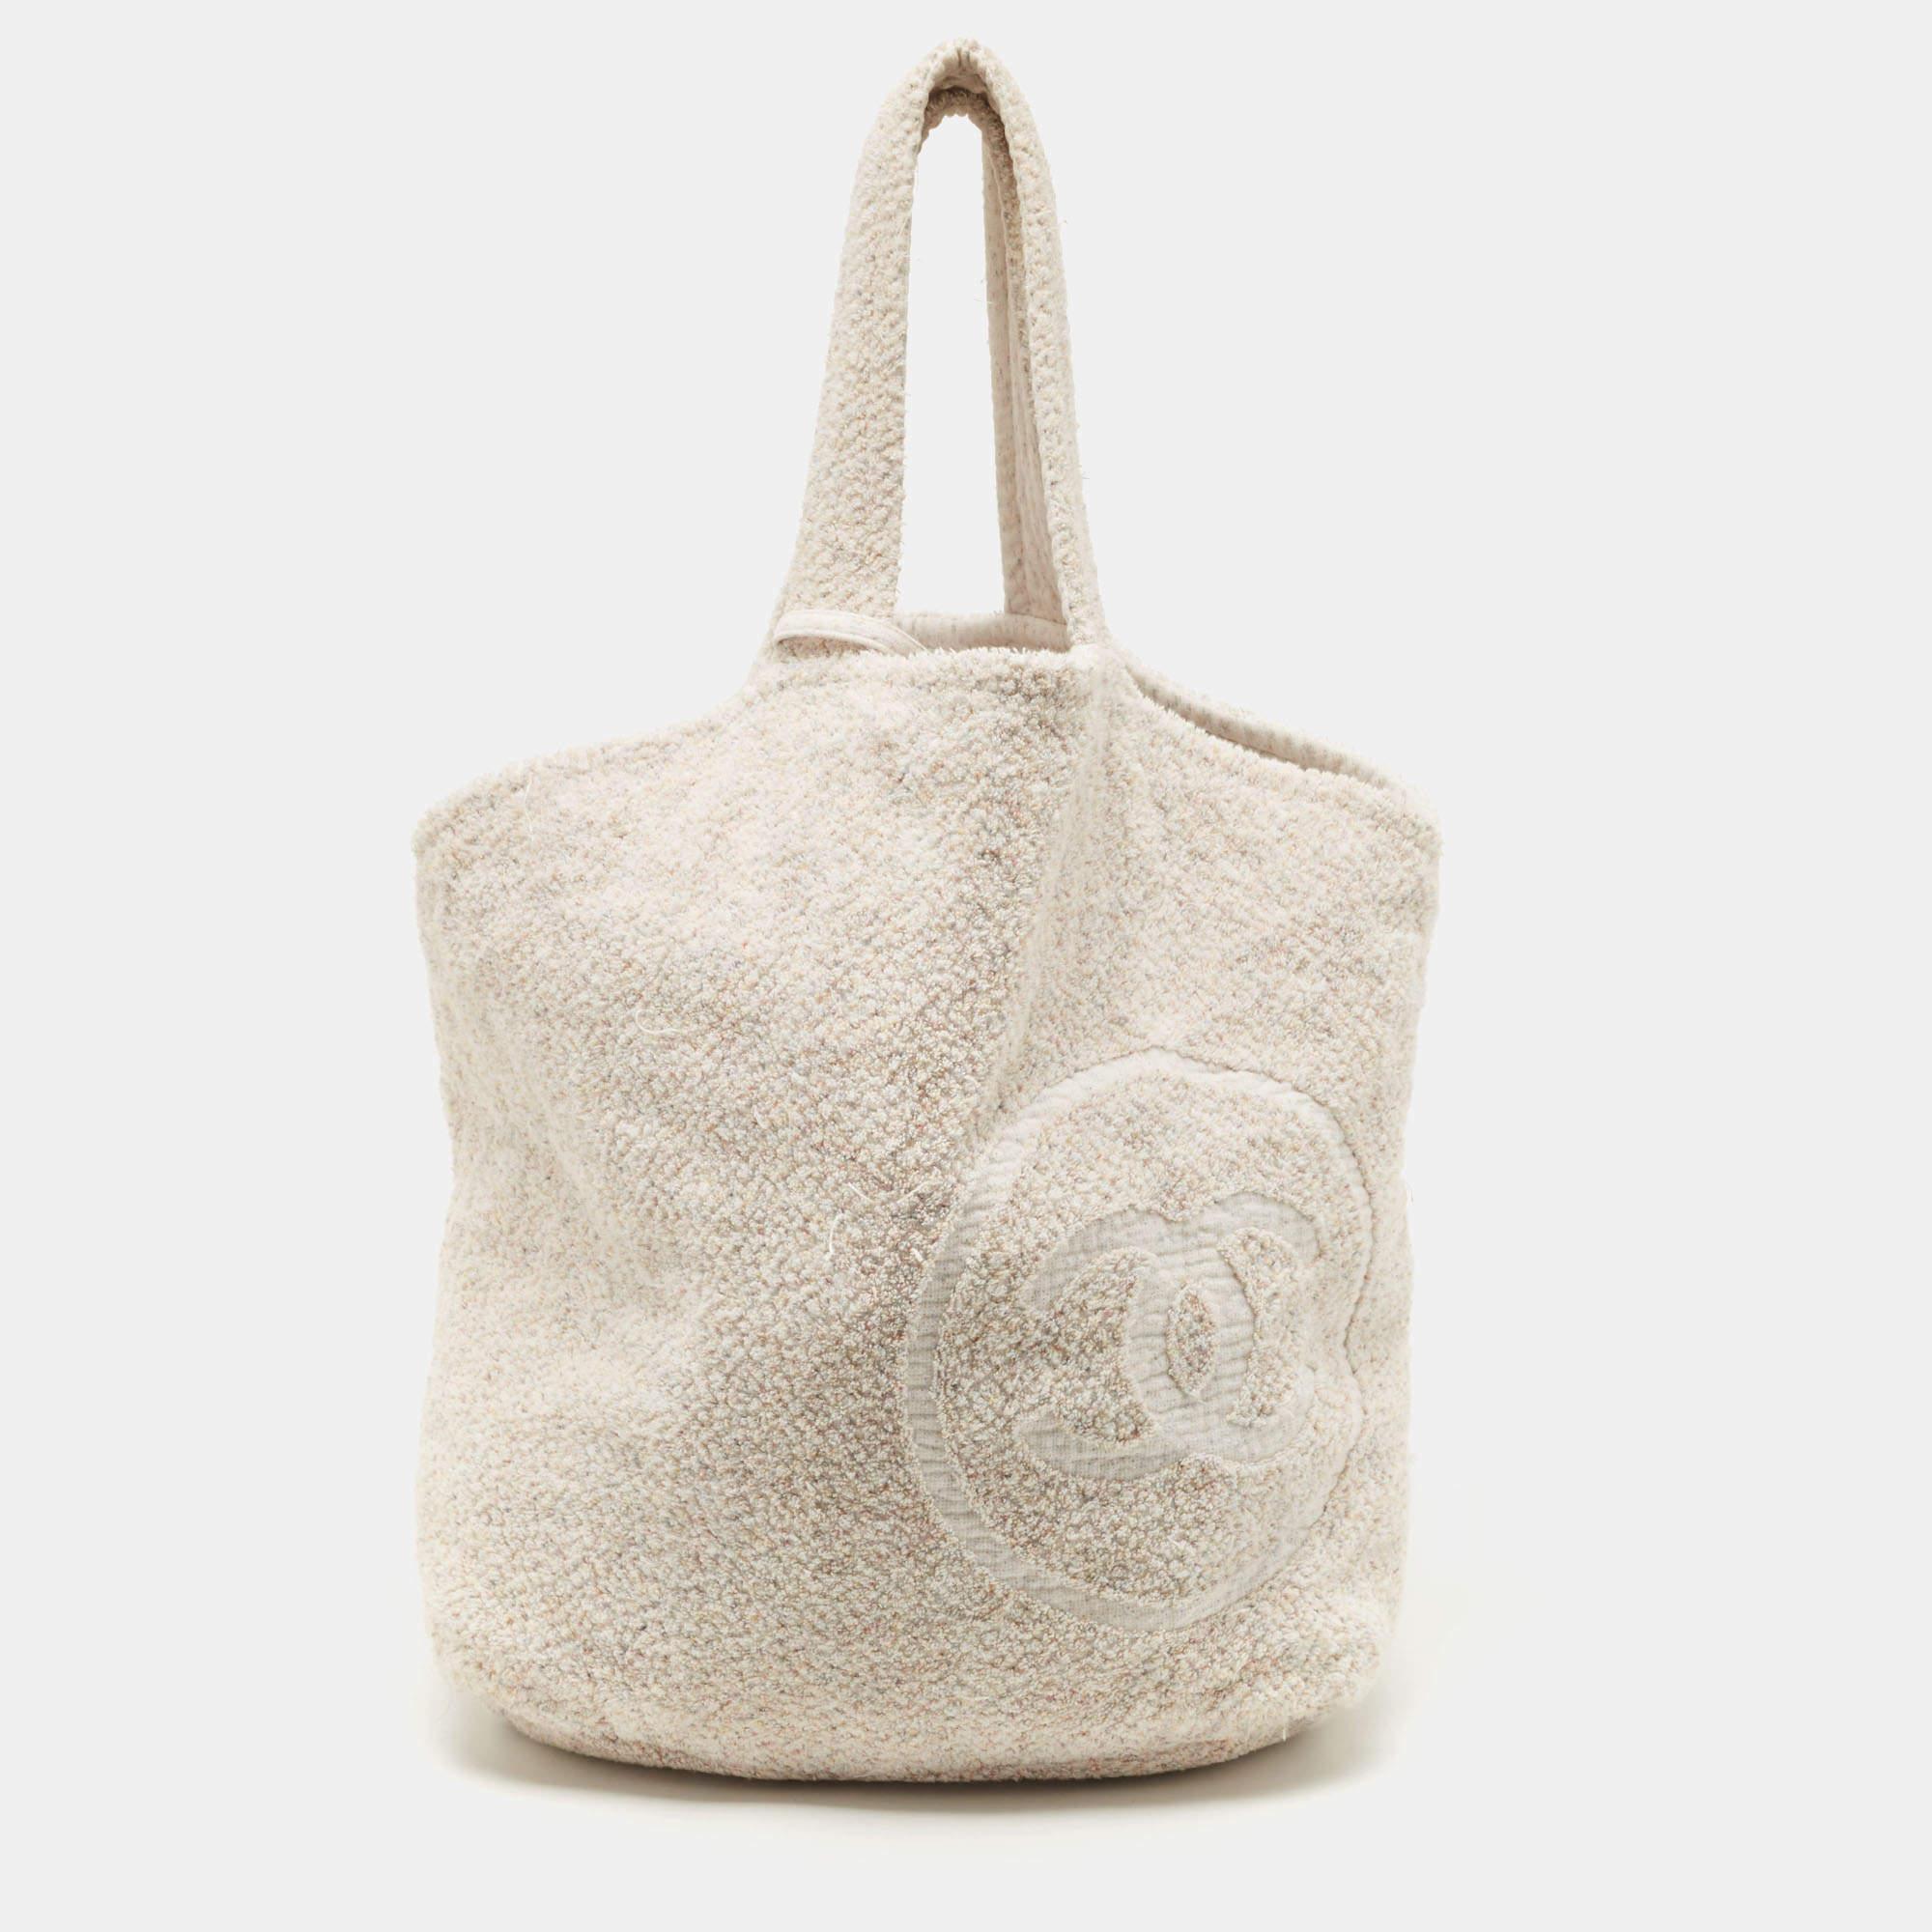 Chanel Beach Bag Towel Set - 4 For Sale on 1stDibs  chanel beach towel  price, harga chanel beach towel, chanel beach bag with towel